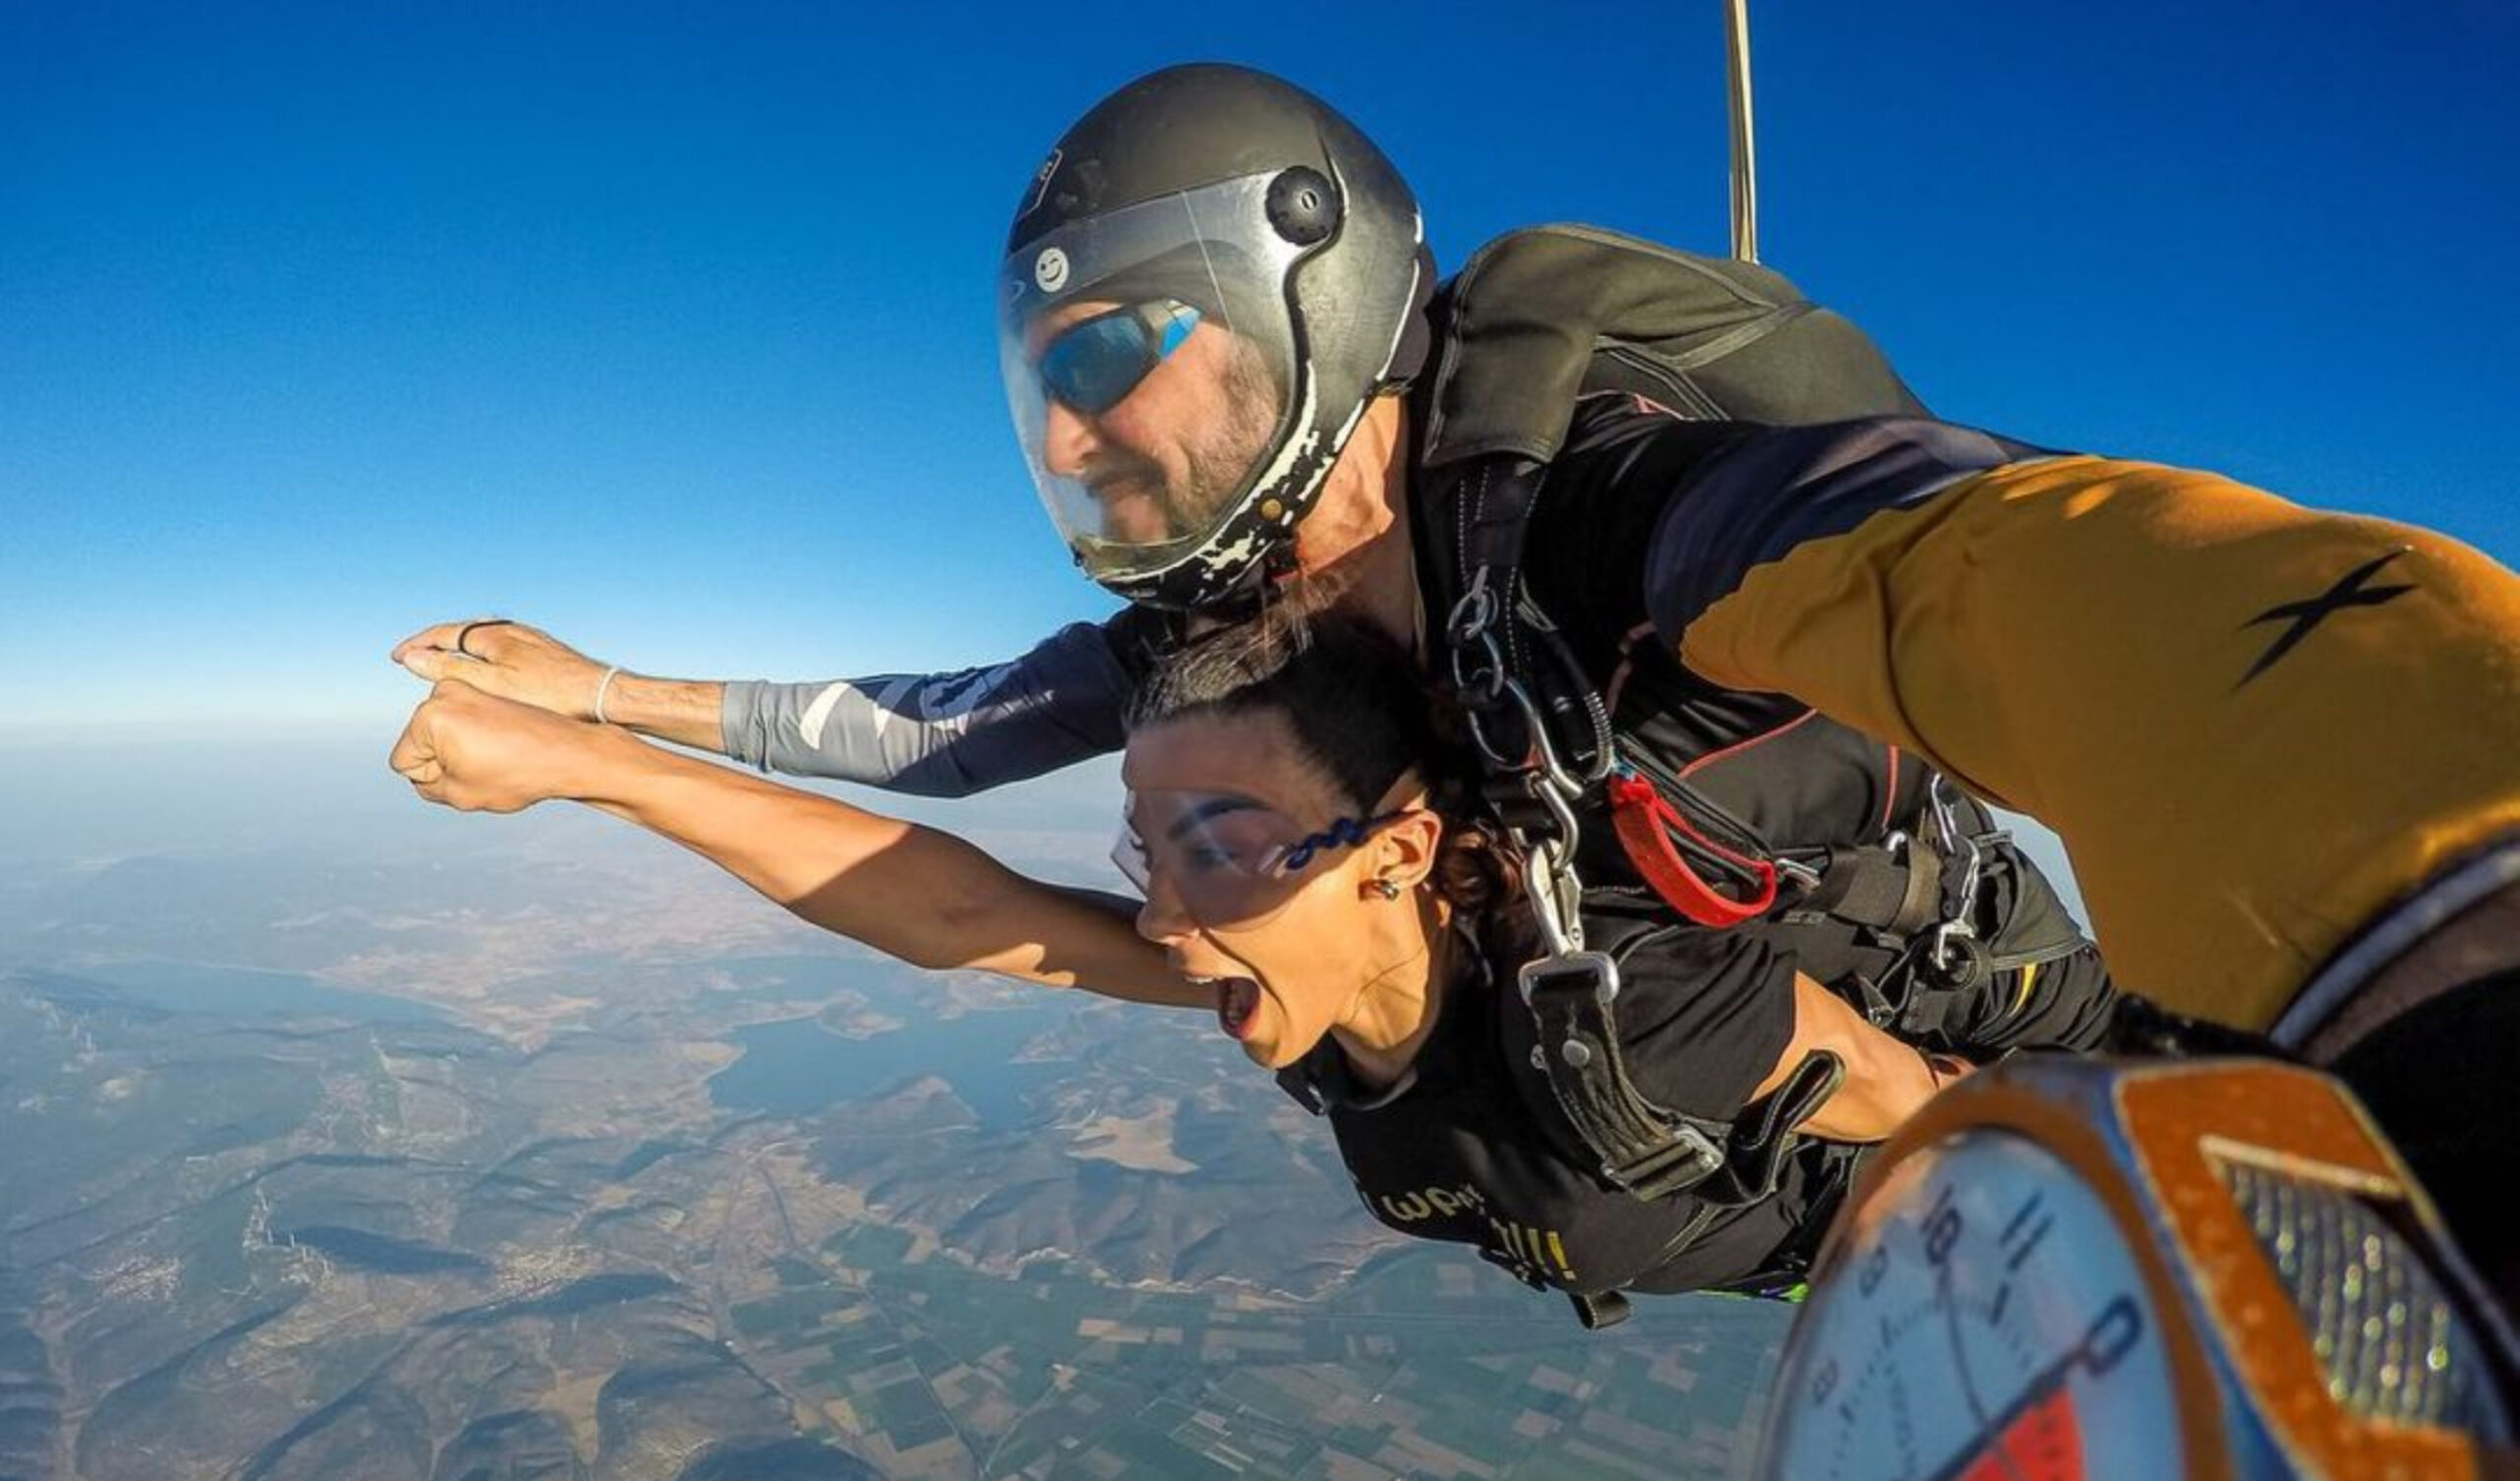 Ειρήνη Παπαδοπούλου: Έκανε ελεύθερη πτώση από αεροπλάνο –Εντυπωσιακές φωτογραφίες